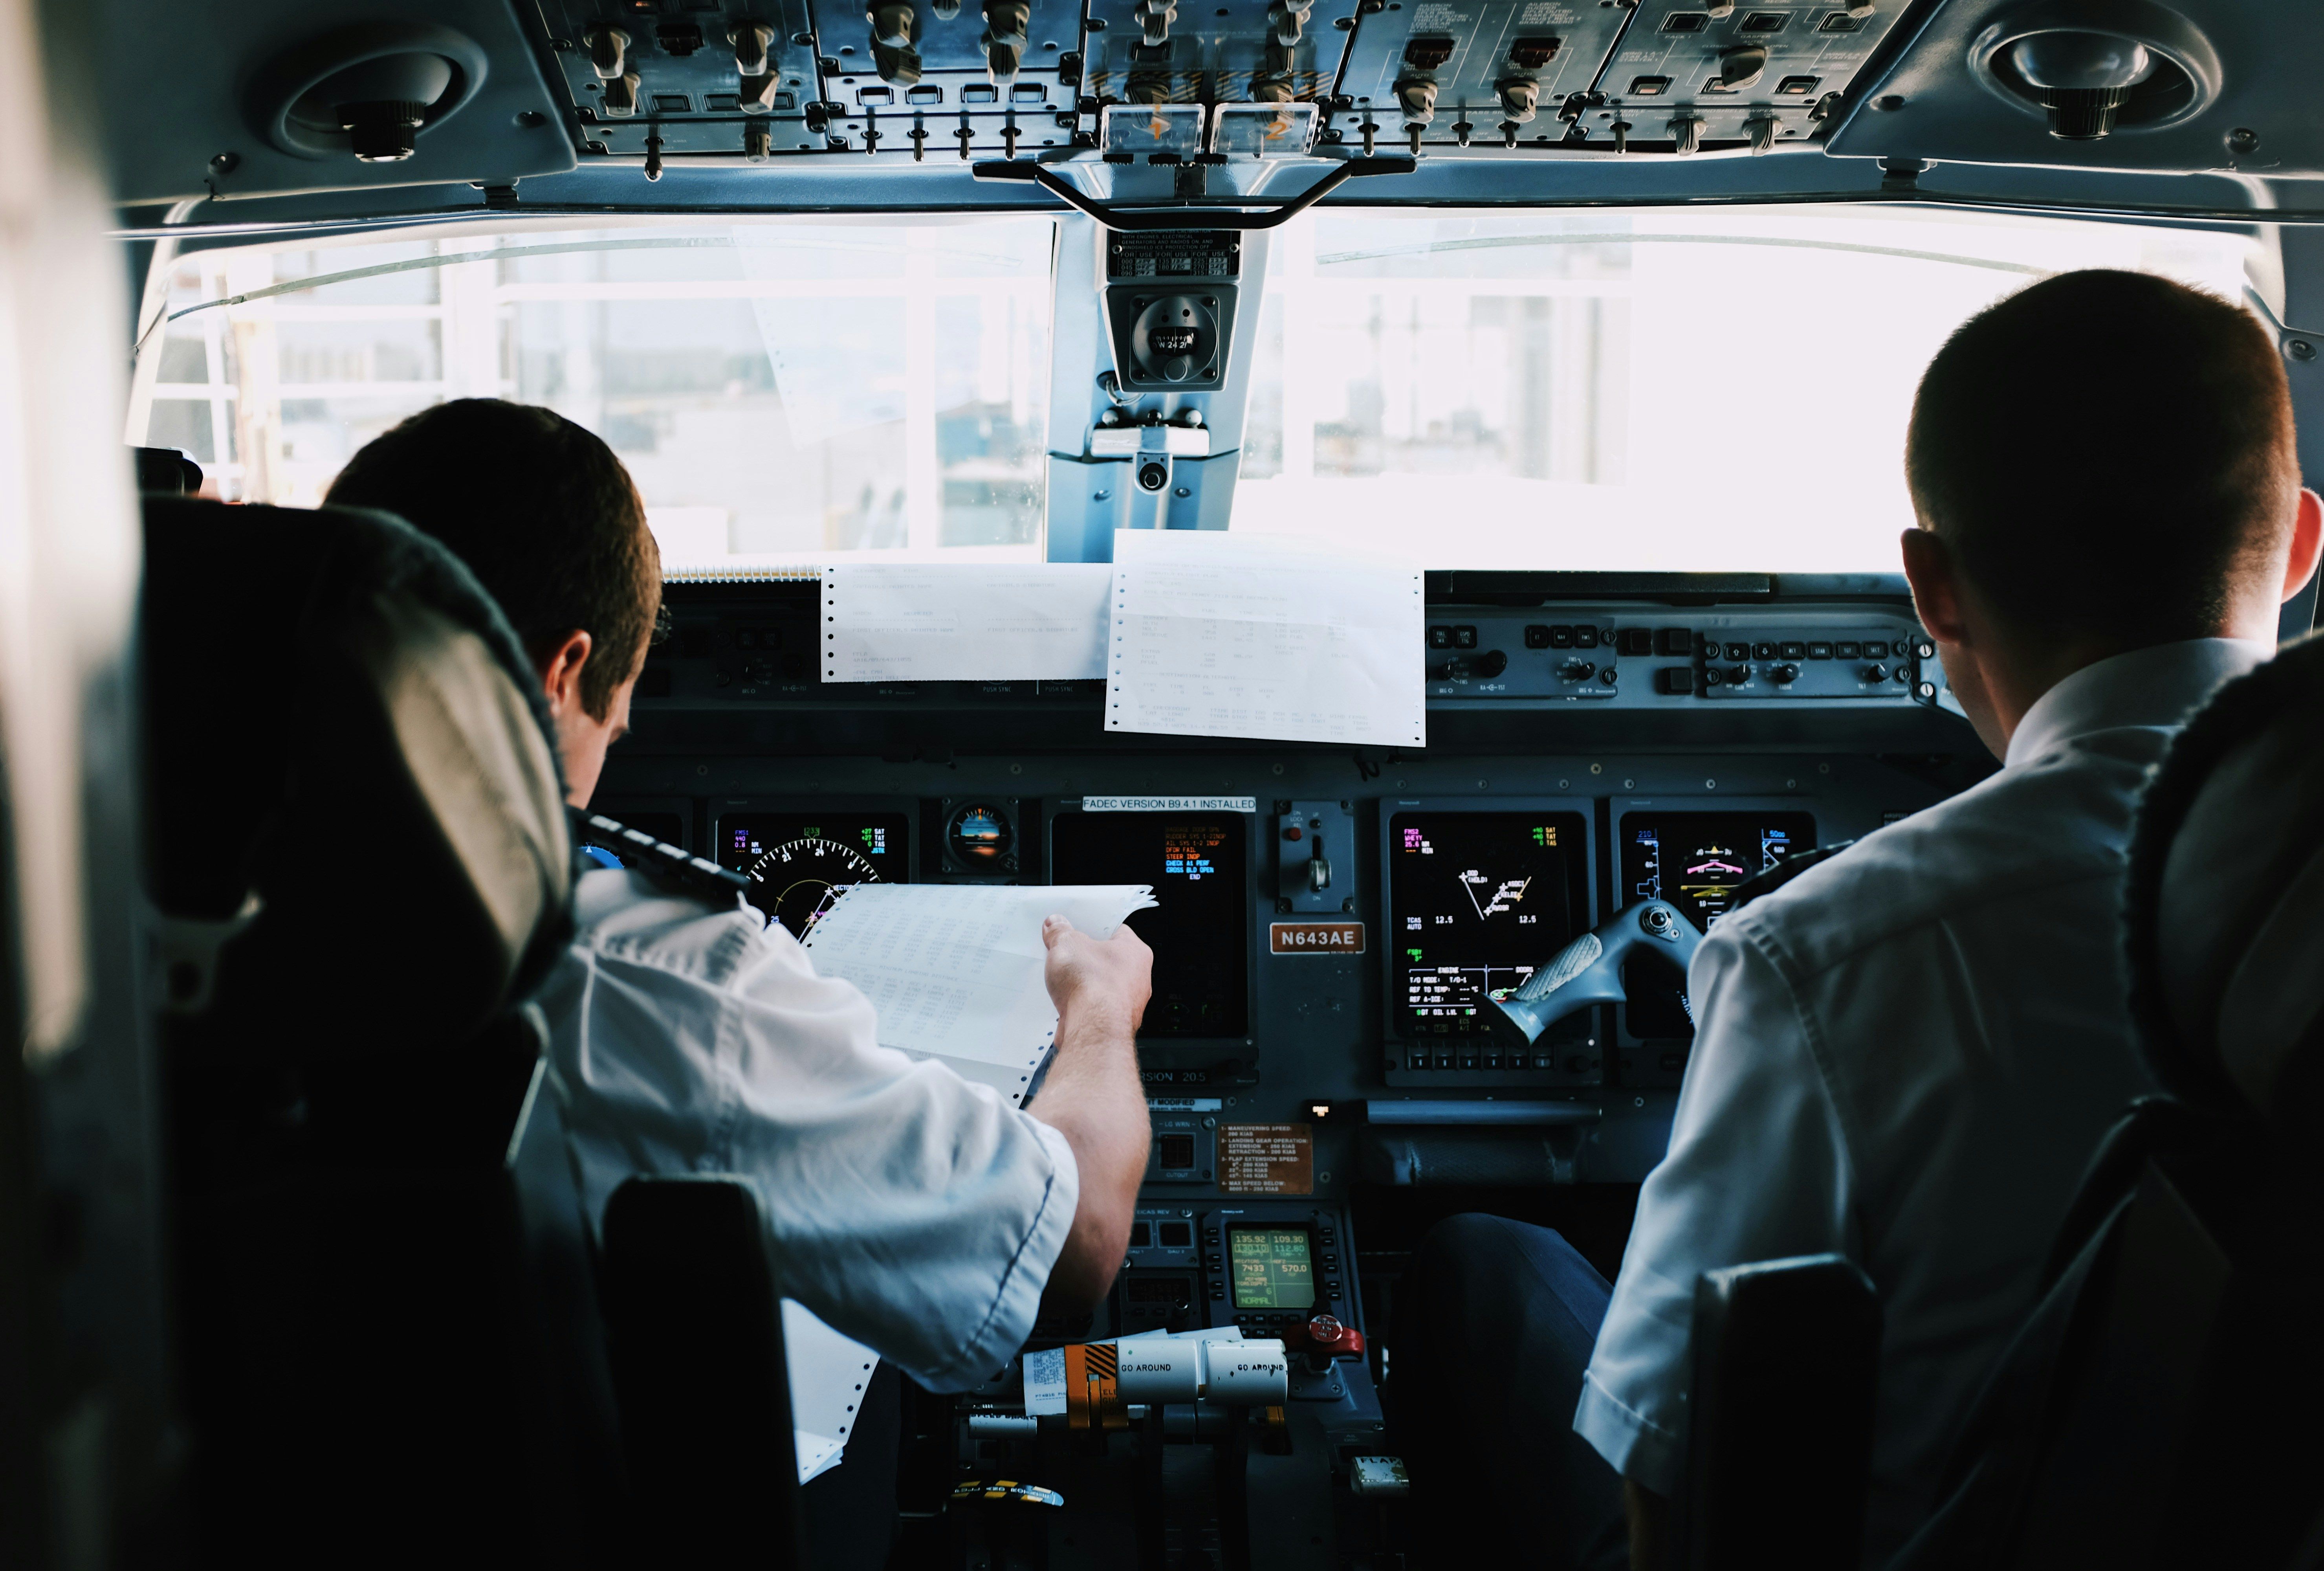 Курьезные случаи в самолете - пилот перед рейсом понял, что забыл паспорт